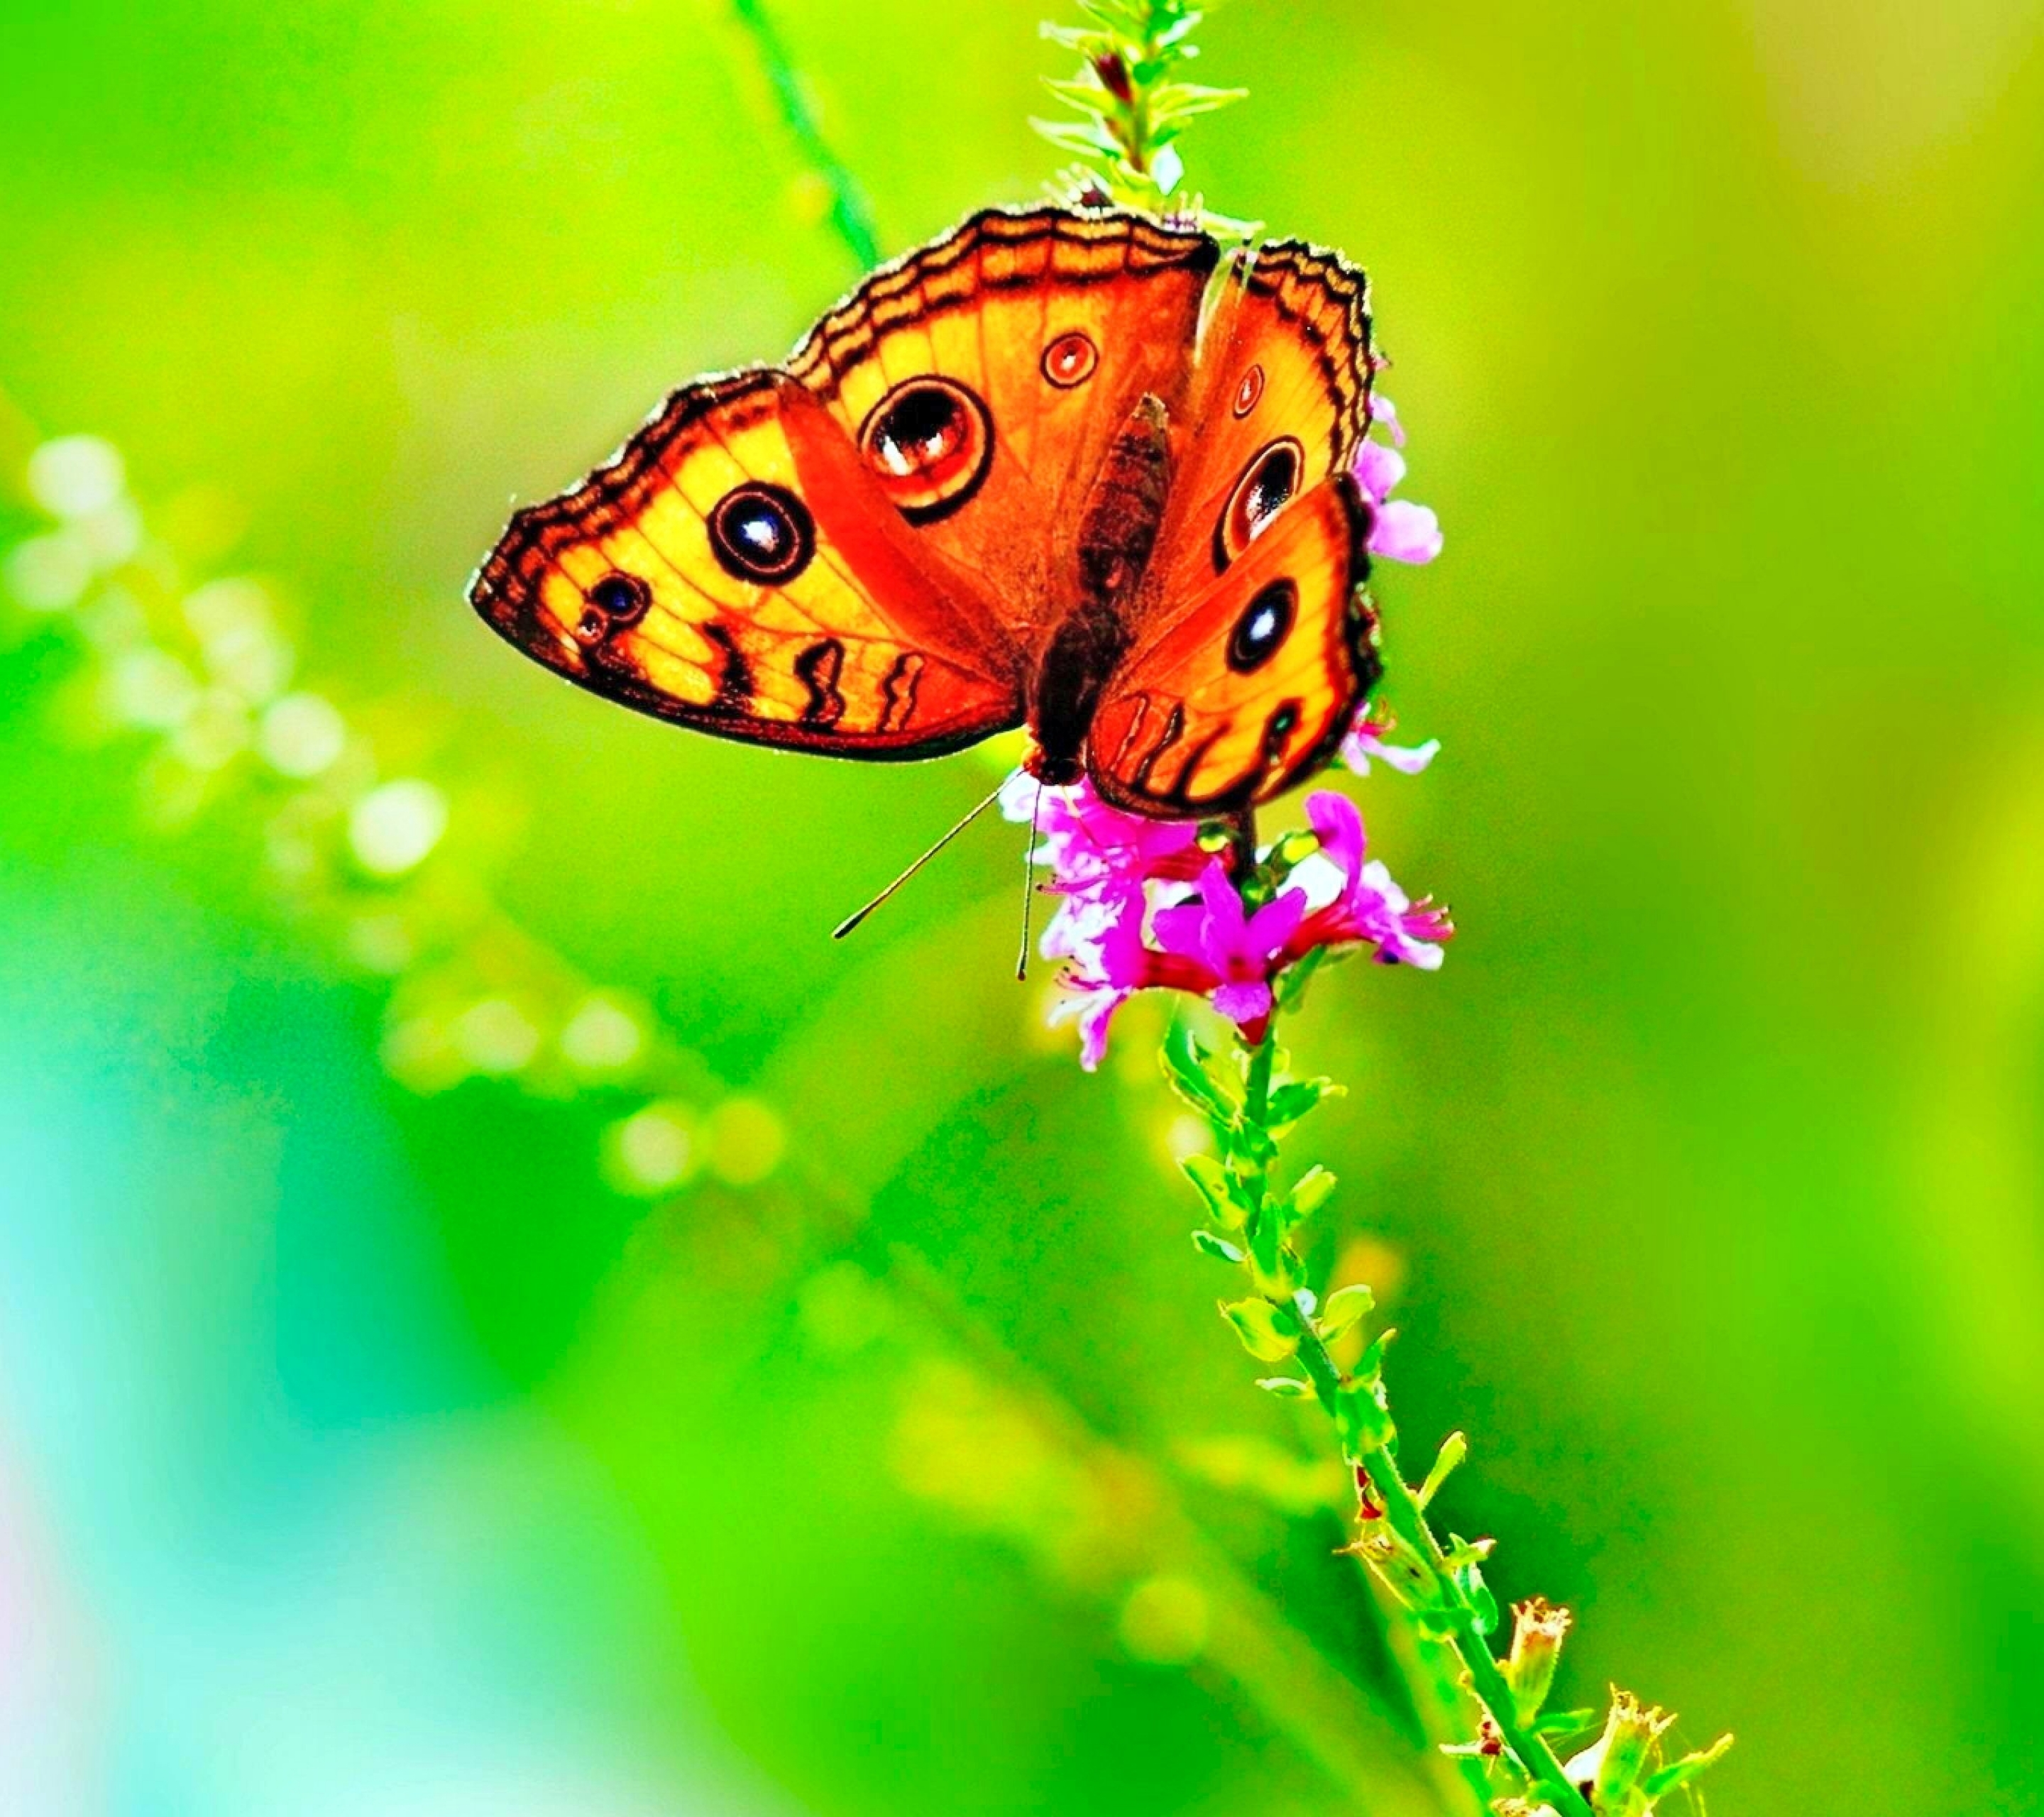 Скачать обои бесплатно Животные, Природа, Бабочка, Зеленый, Красочный, Весна картинка на рабочий стол ПК